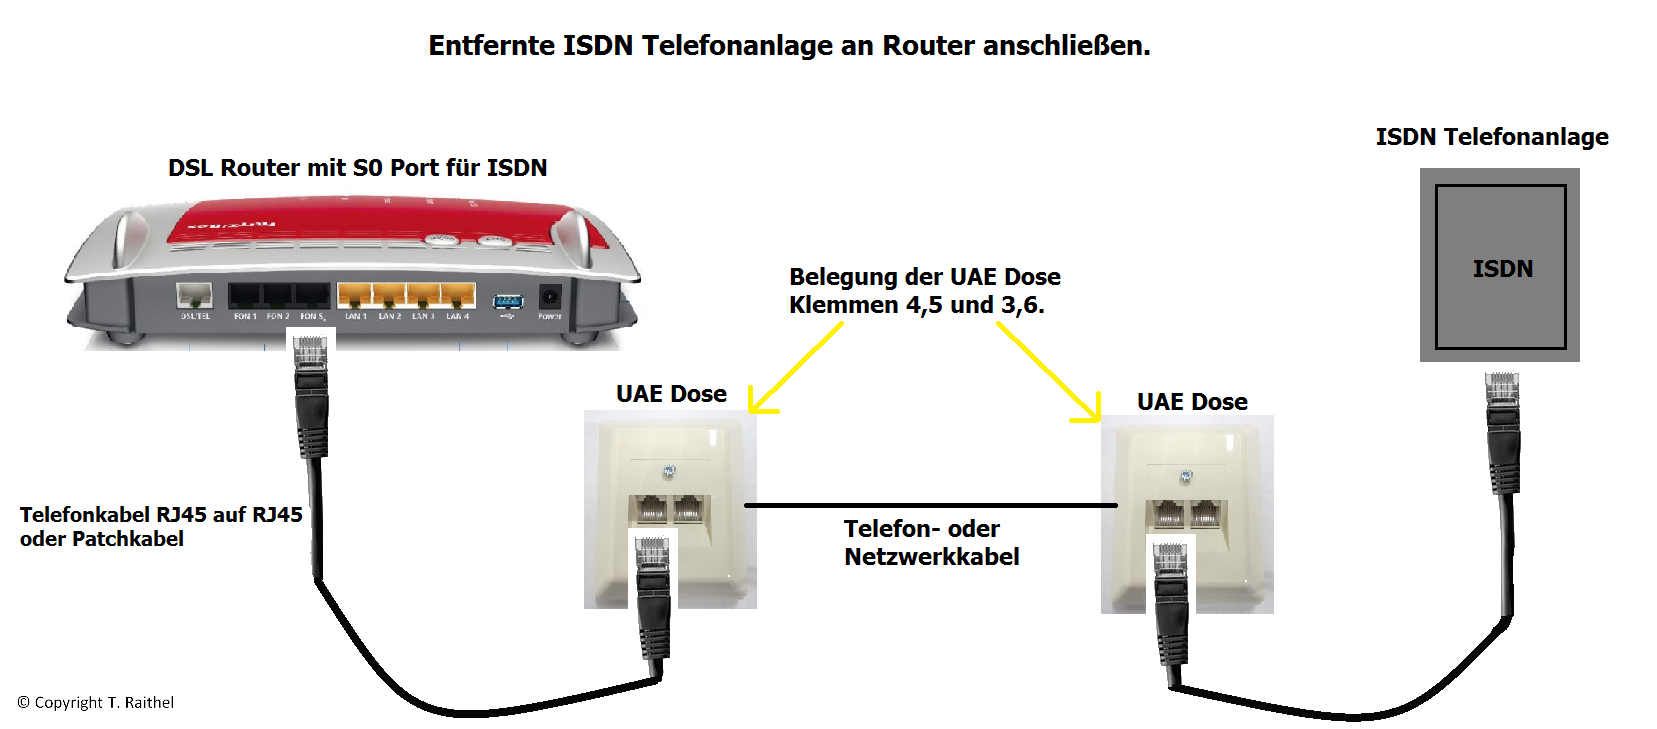 DSL Router anschließen - ISDN Anlage an Router anschließen